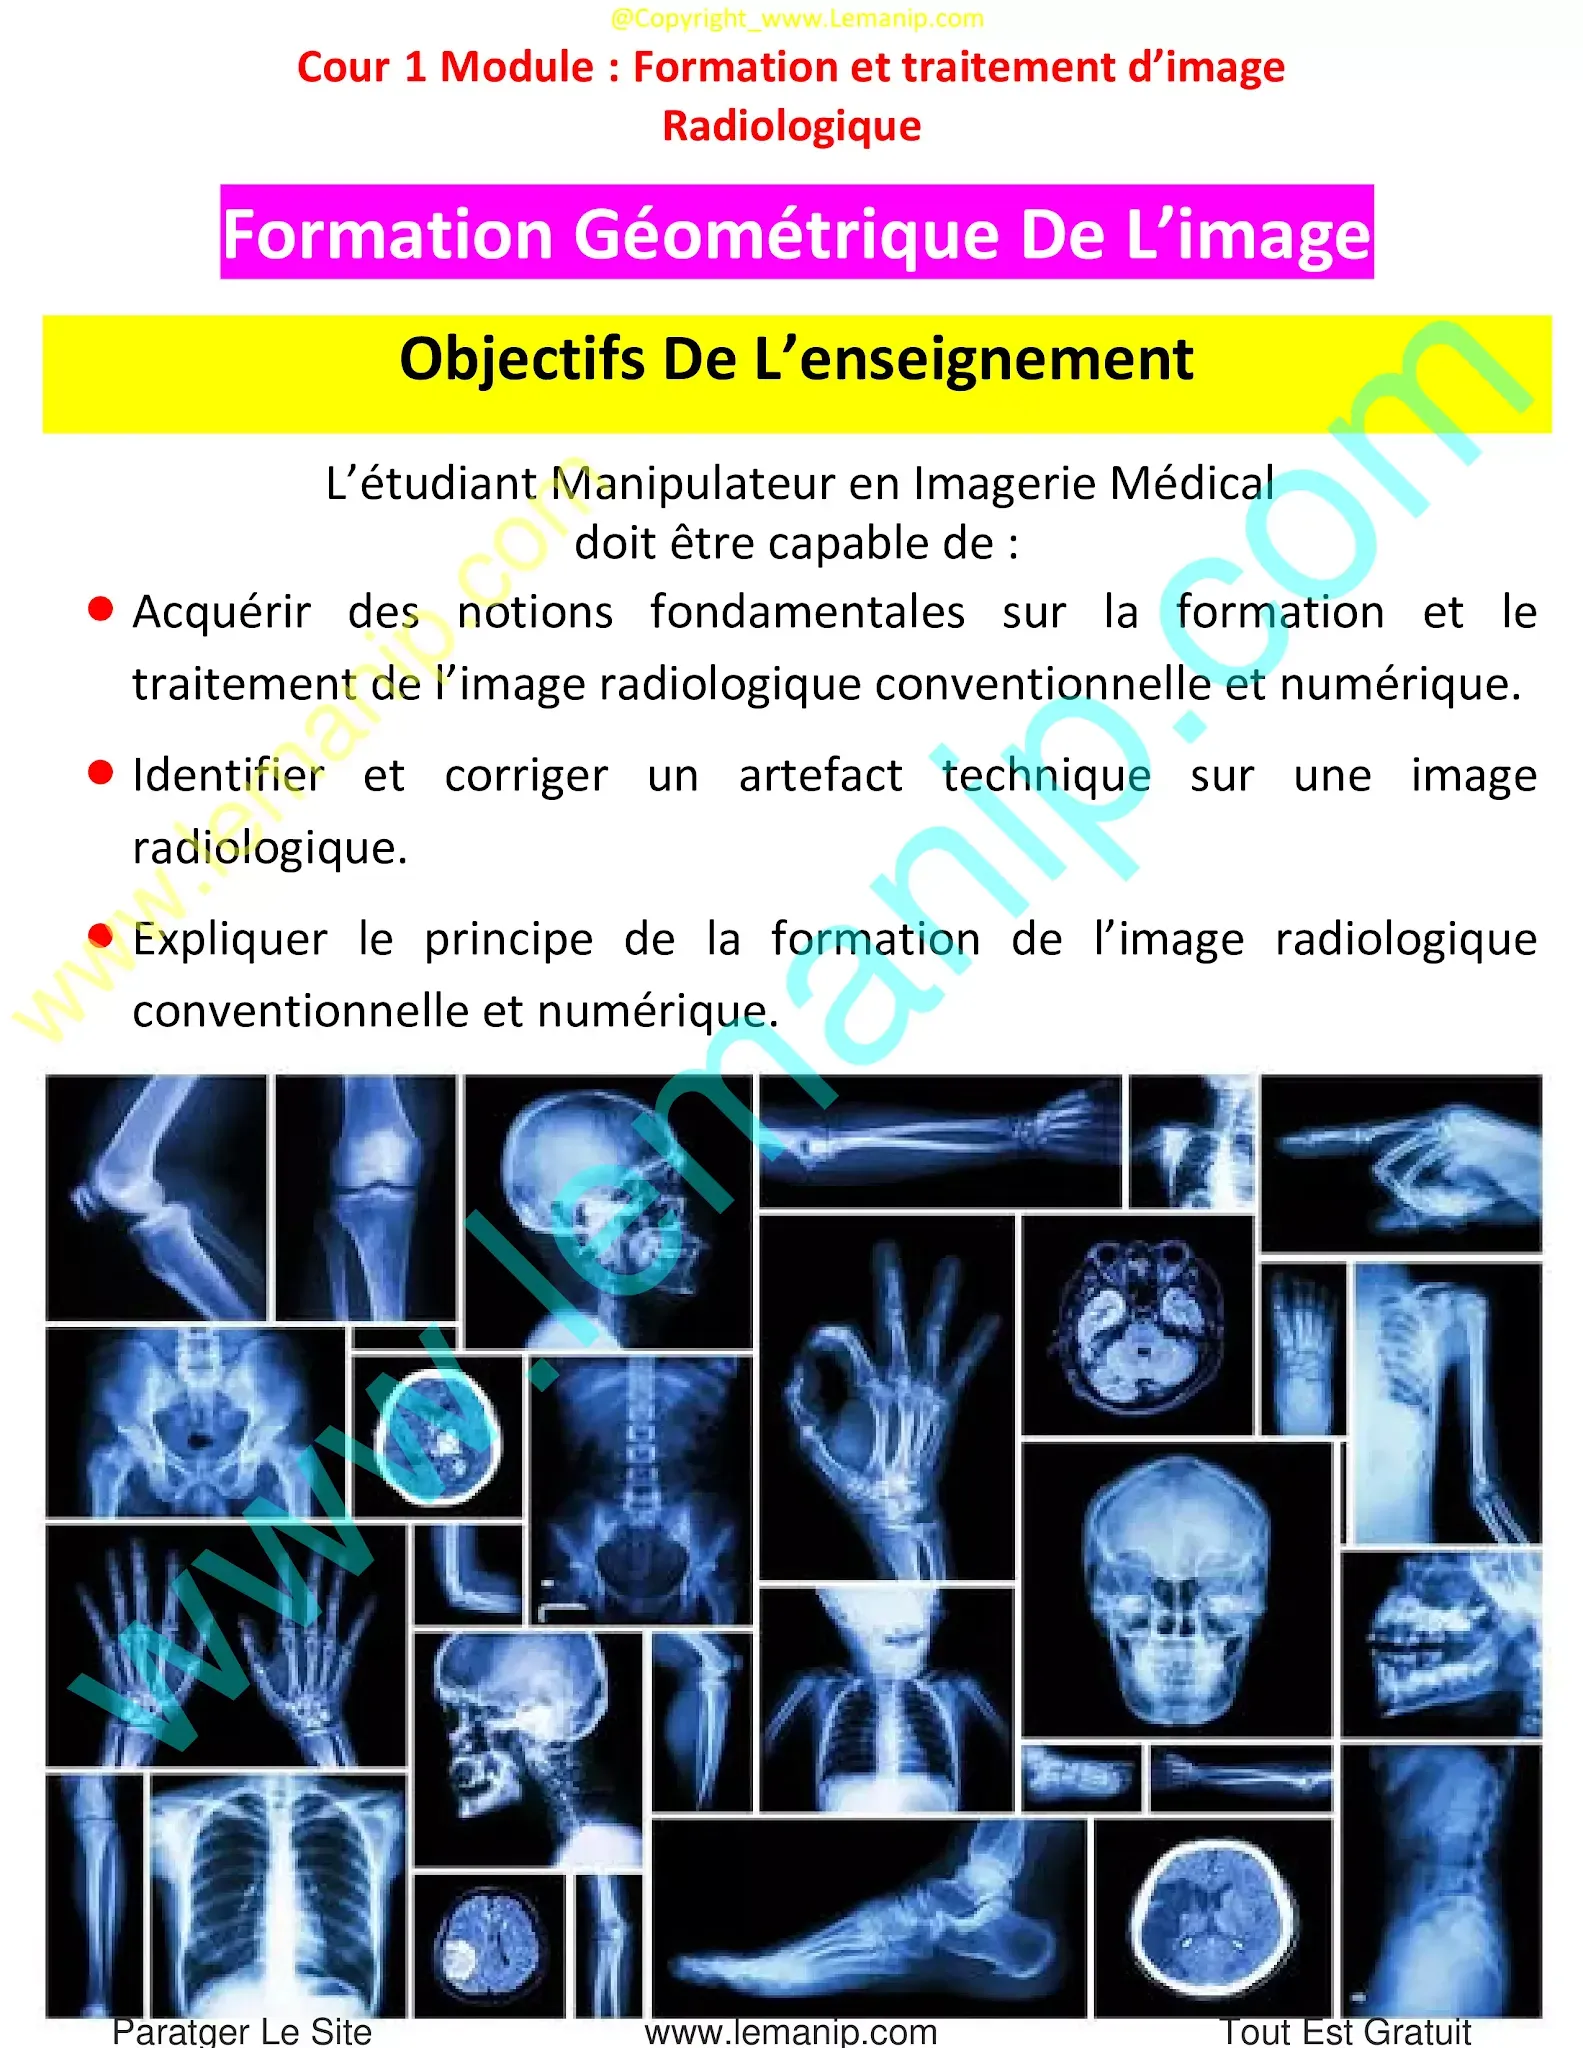 Objectifs Du Module : Formation et Traitement D’image Radiologique